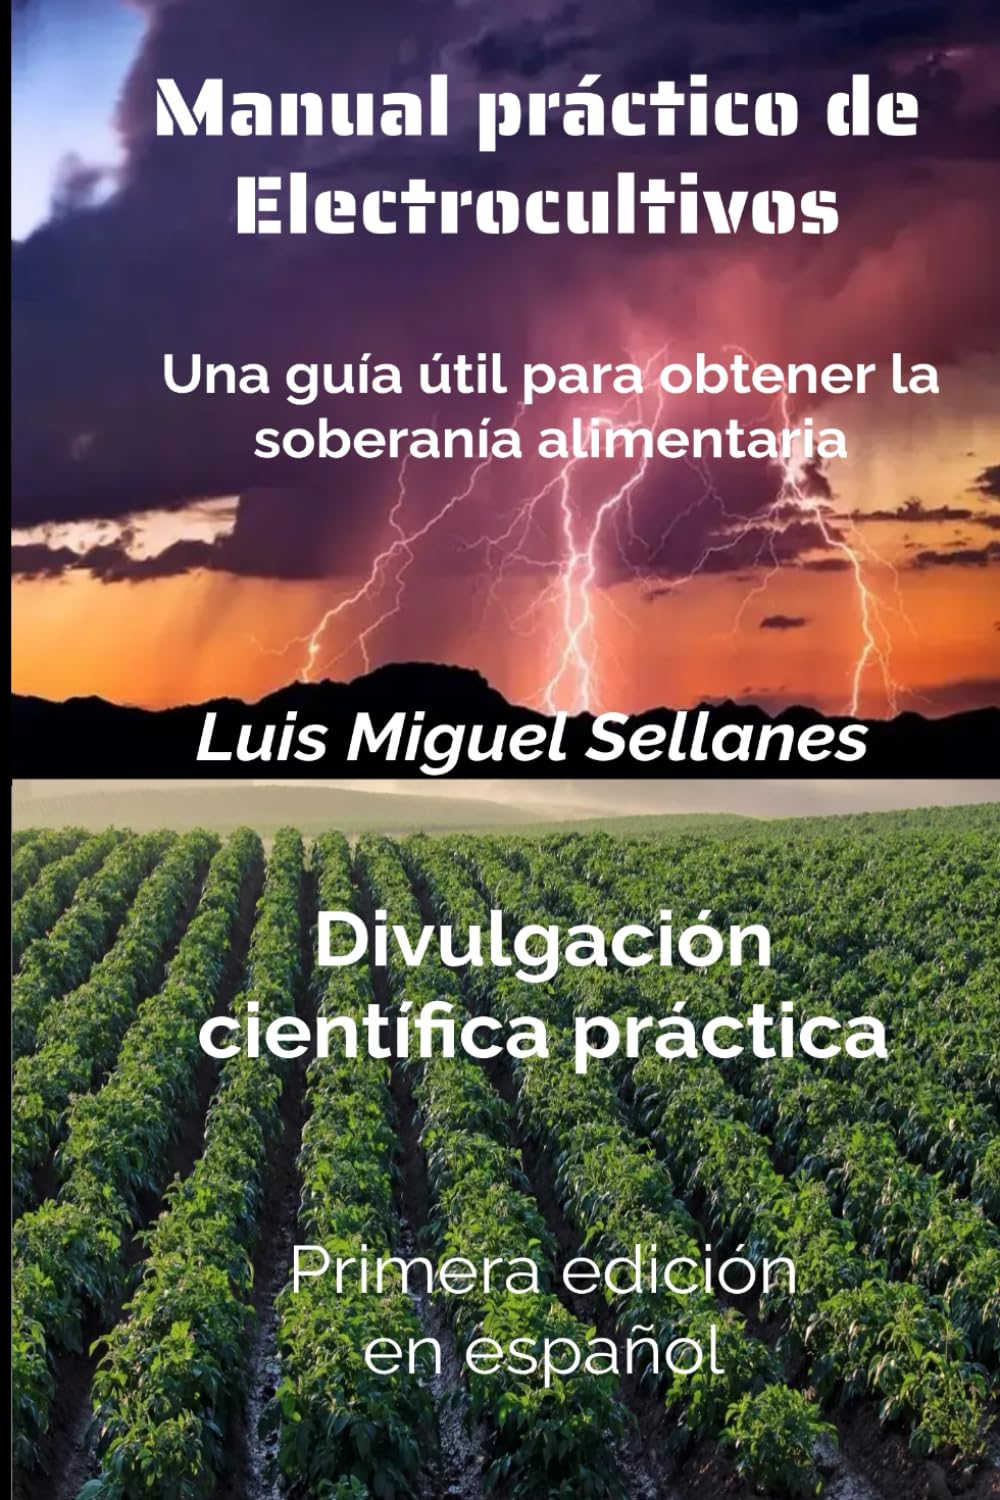 Manual práctico de electrocultivos: Una guía útil para obtener la soberanía alimentaria (Spanish Edition)